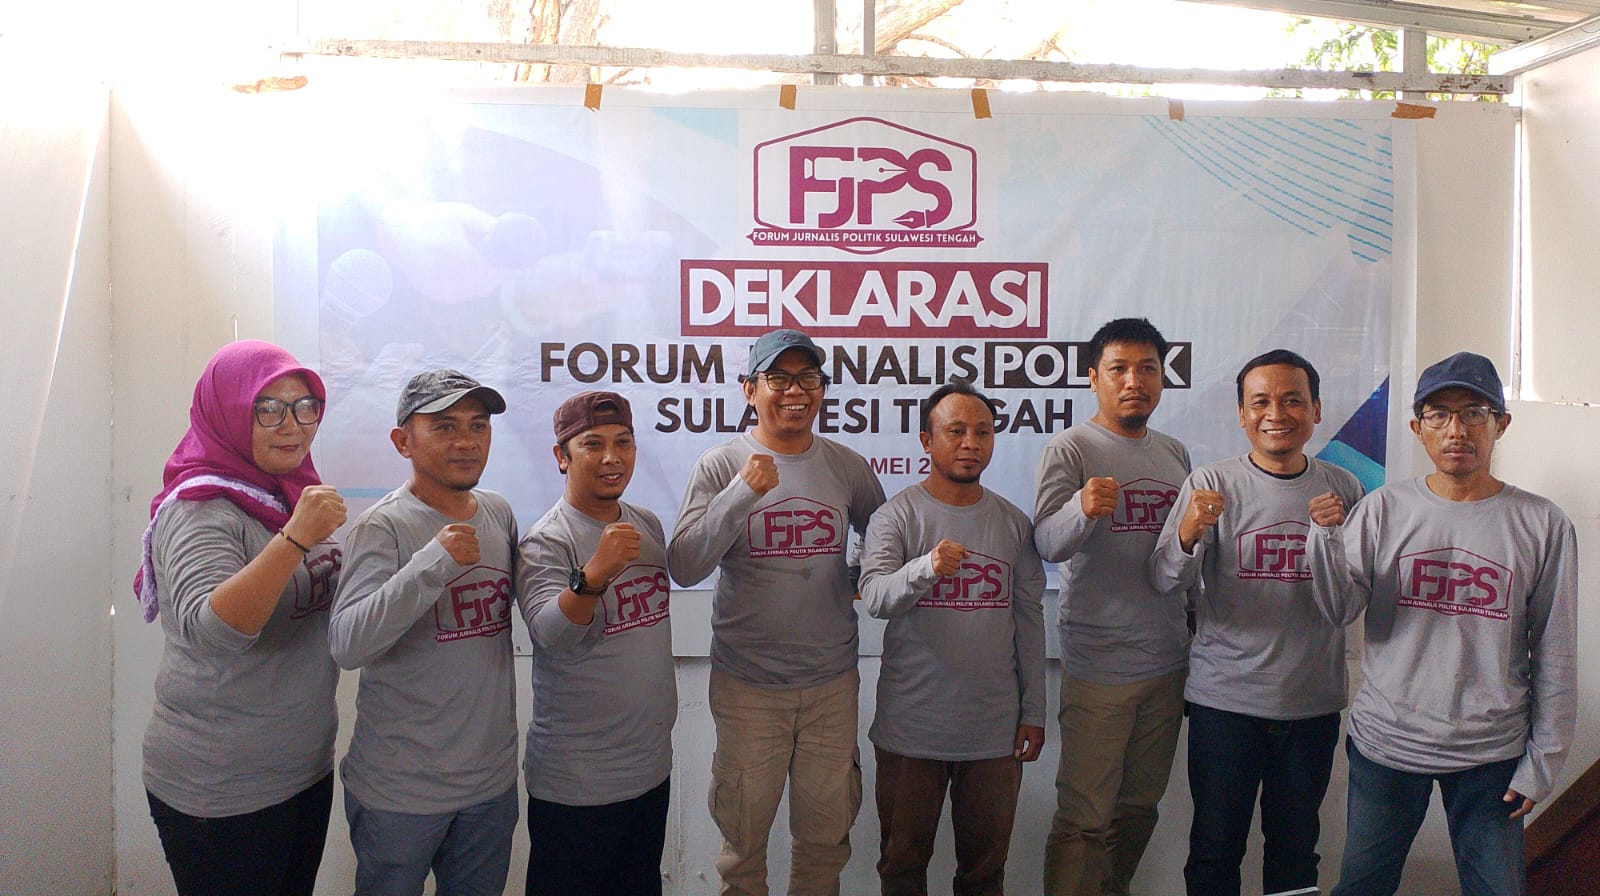 Forum Jurnalis Politik Sulawesi Tengah Dideklarasikan